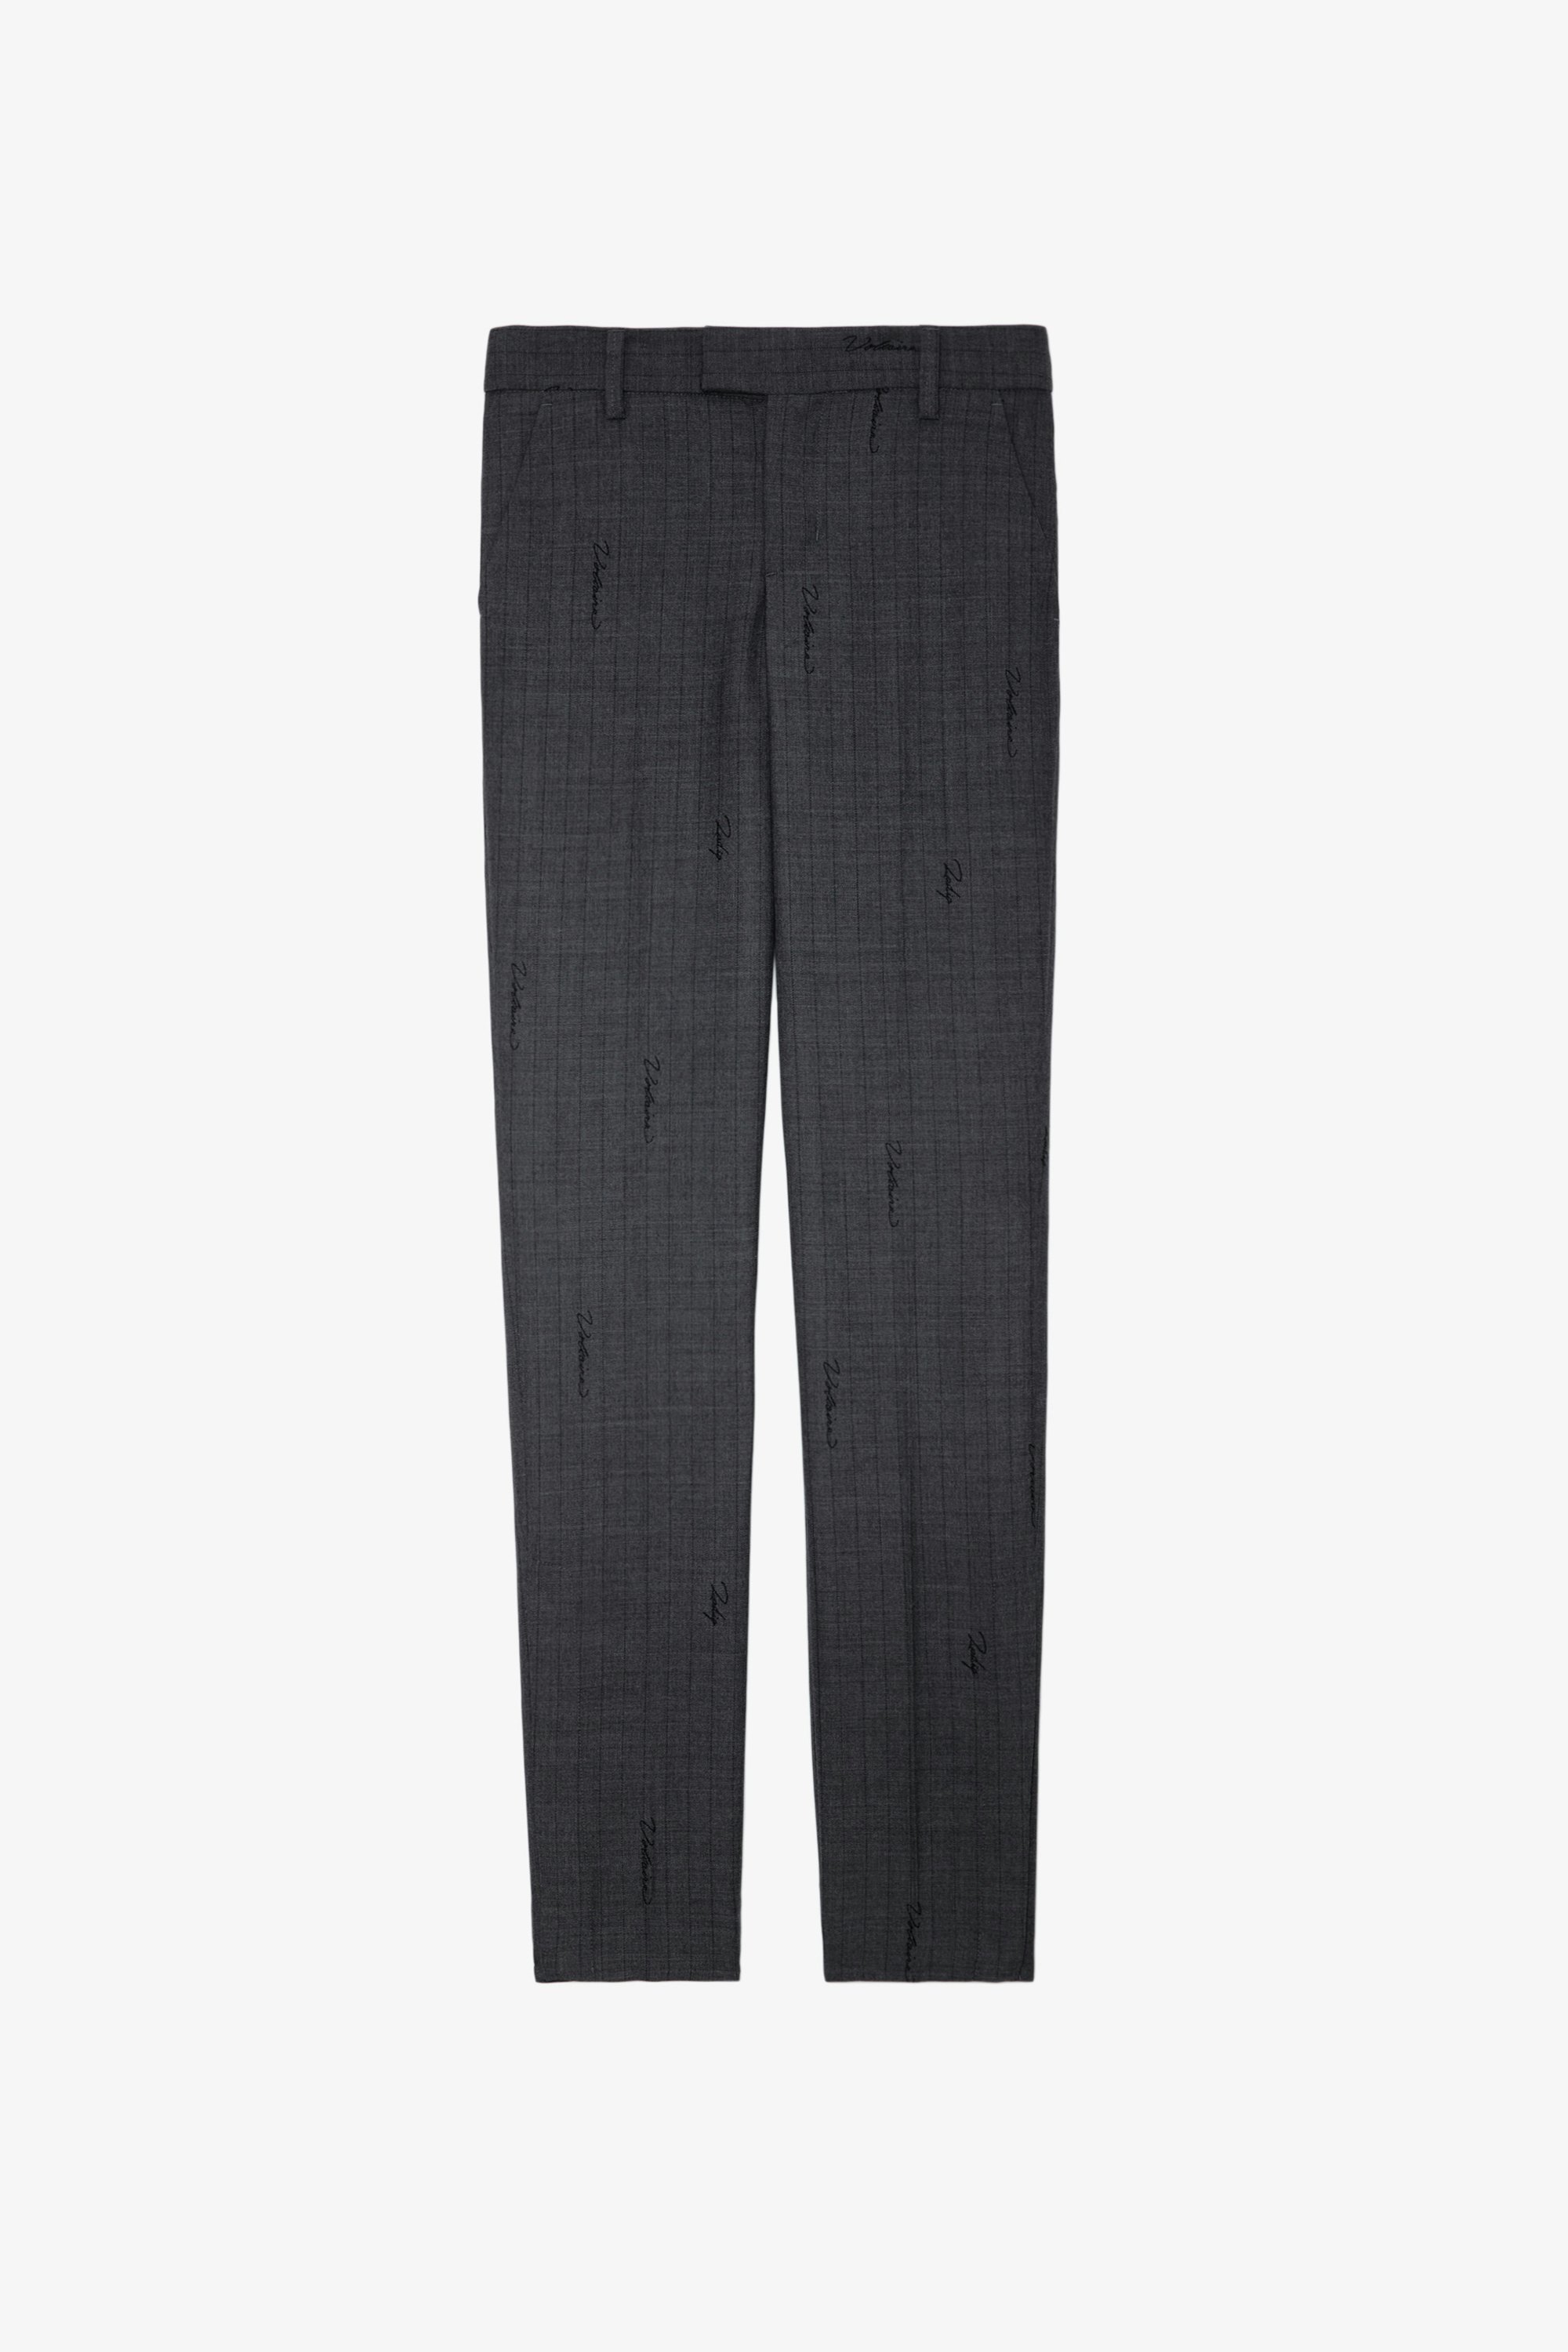 Pantalón Prune - Pantalón de traje antracita de rayas, con monograma y bajos con cremallera, para mujer.